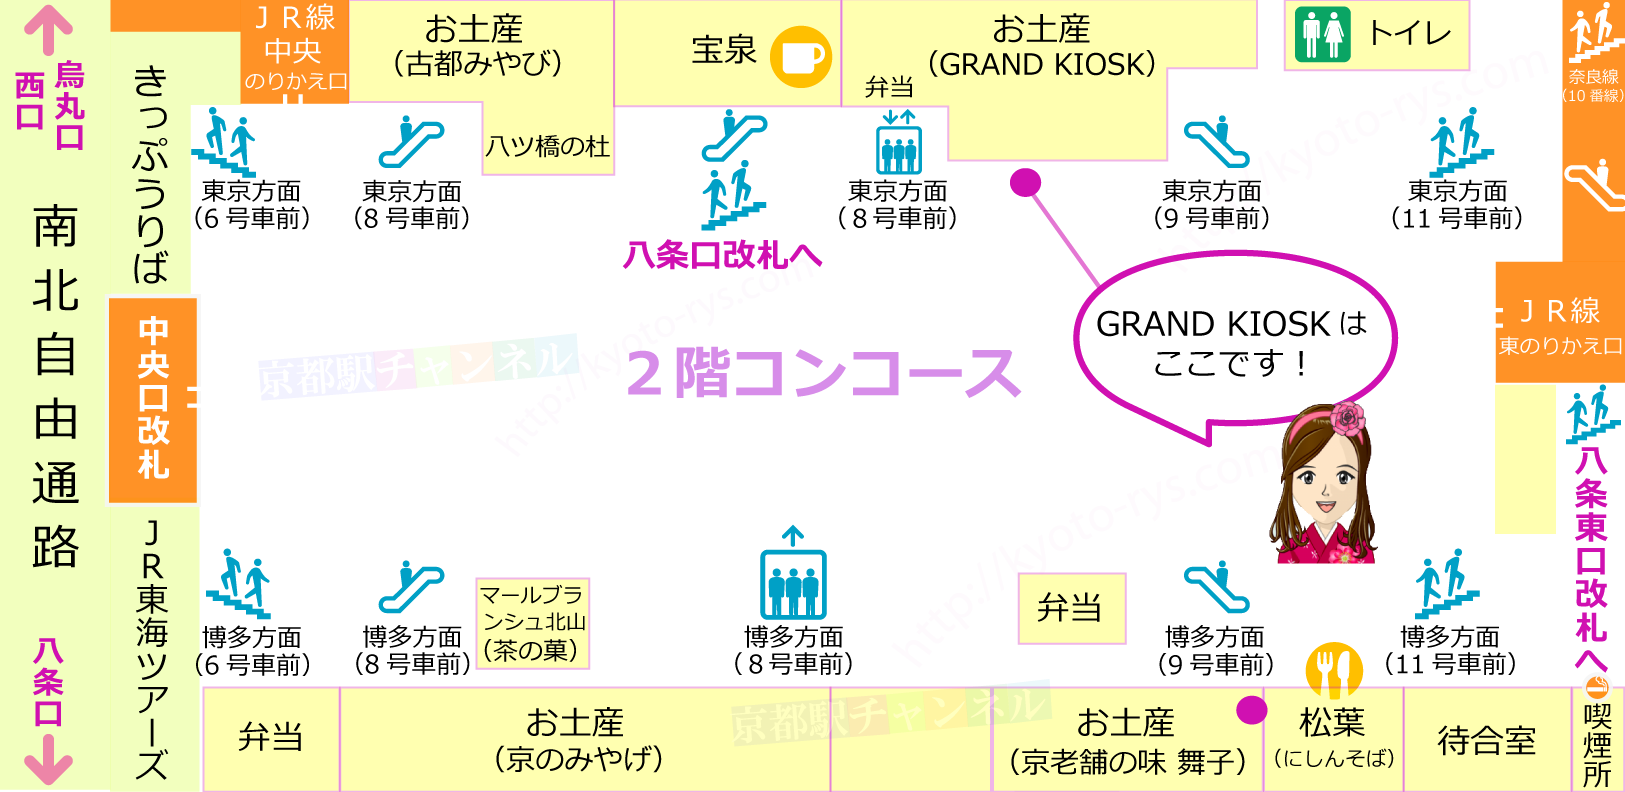 新幹線コンコースの草わらび餅販売マップ